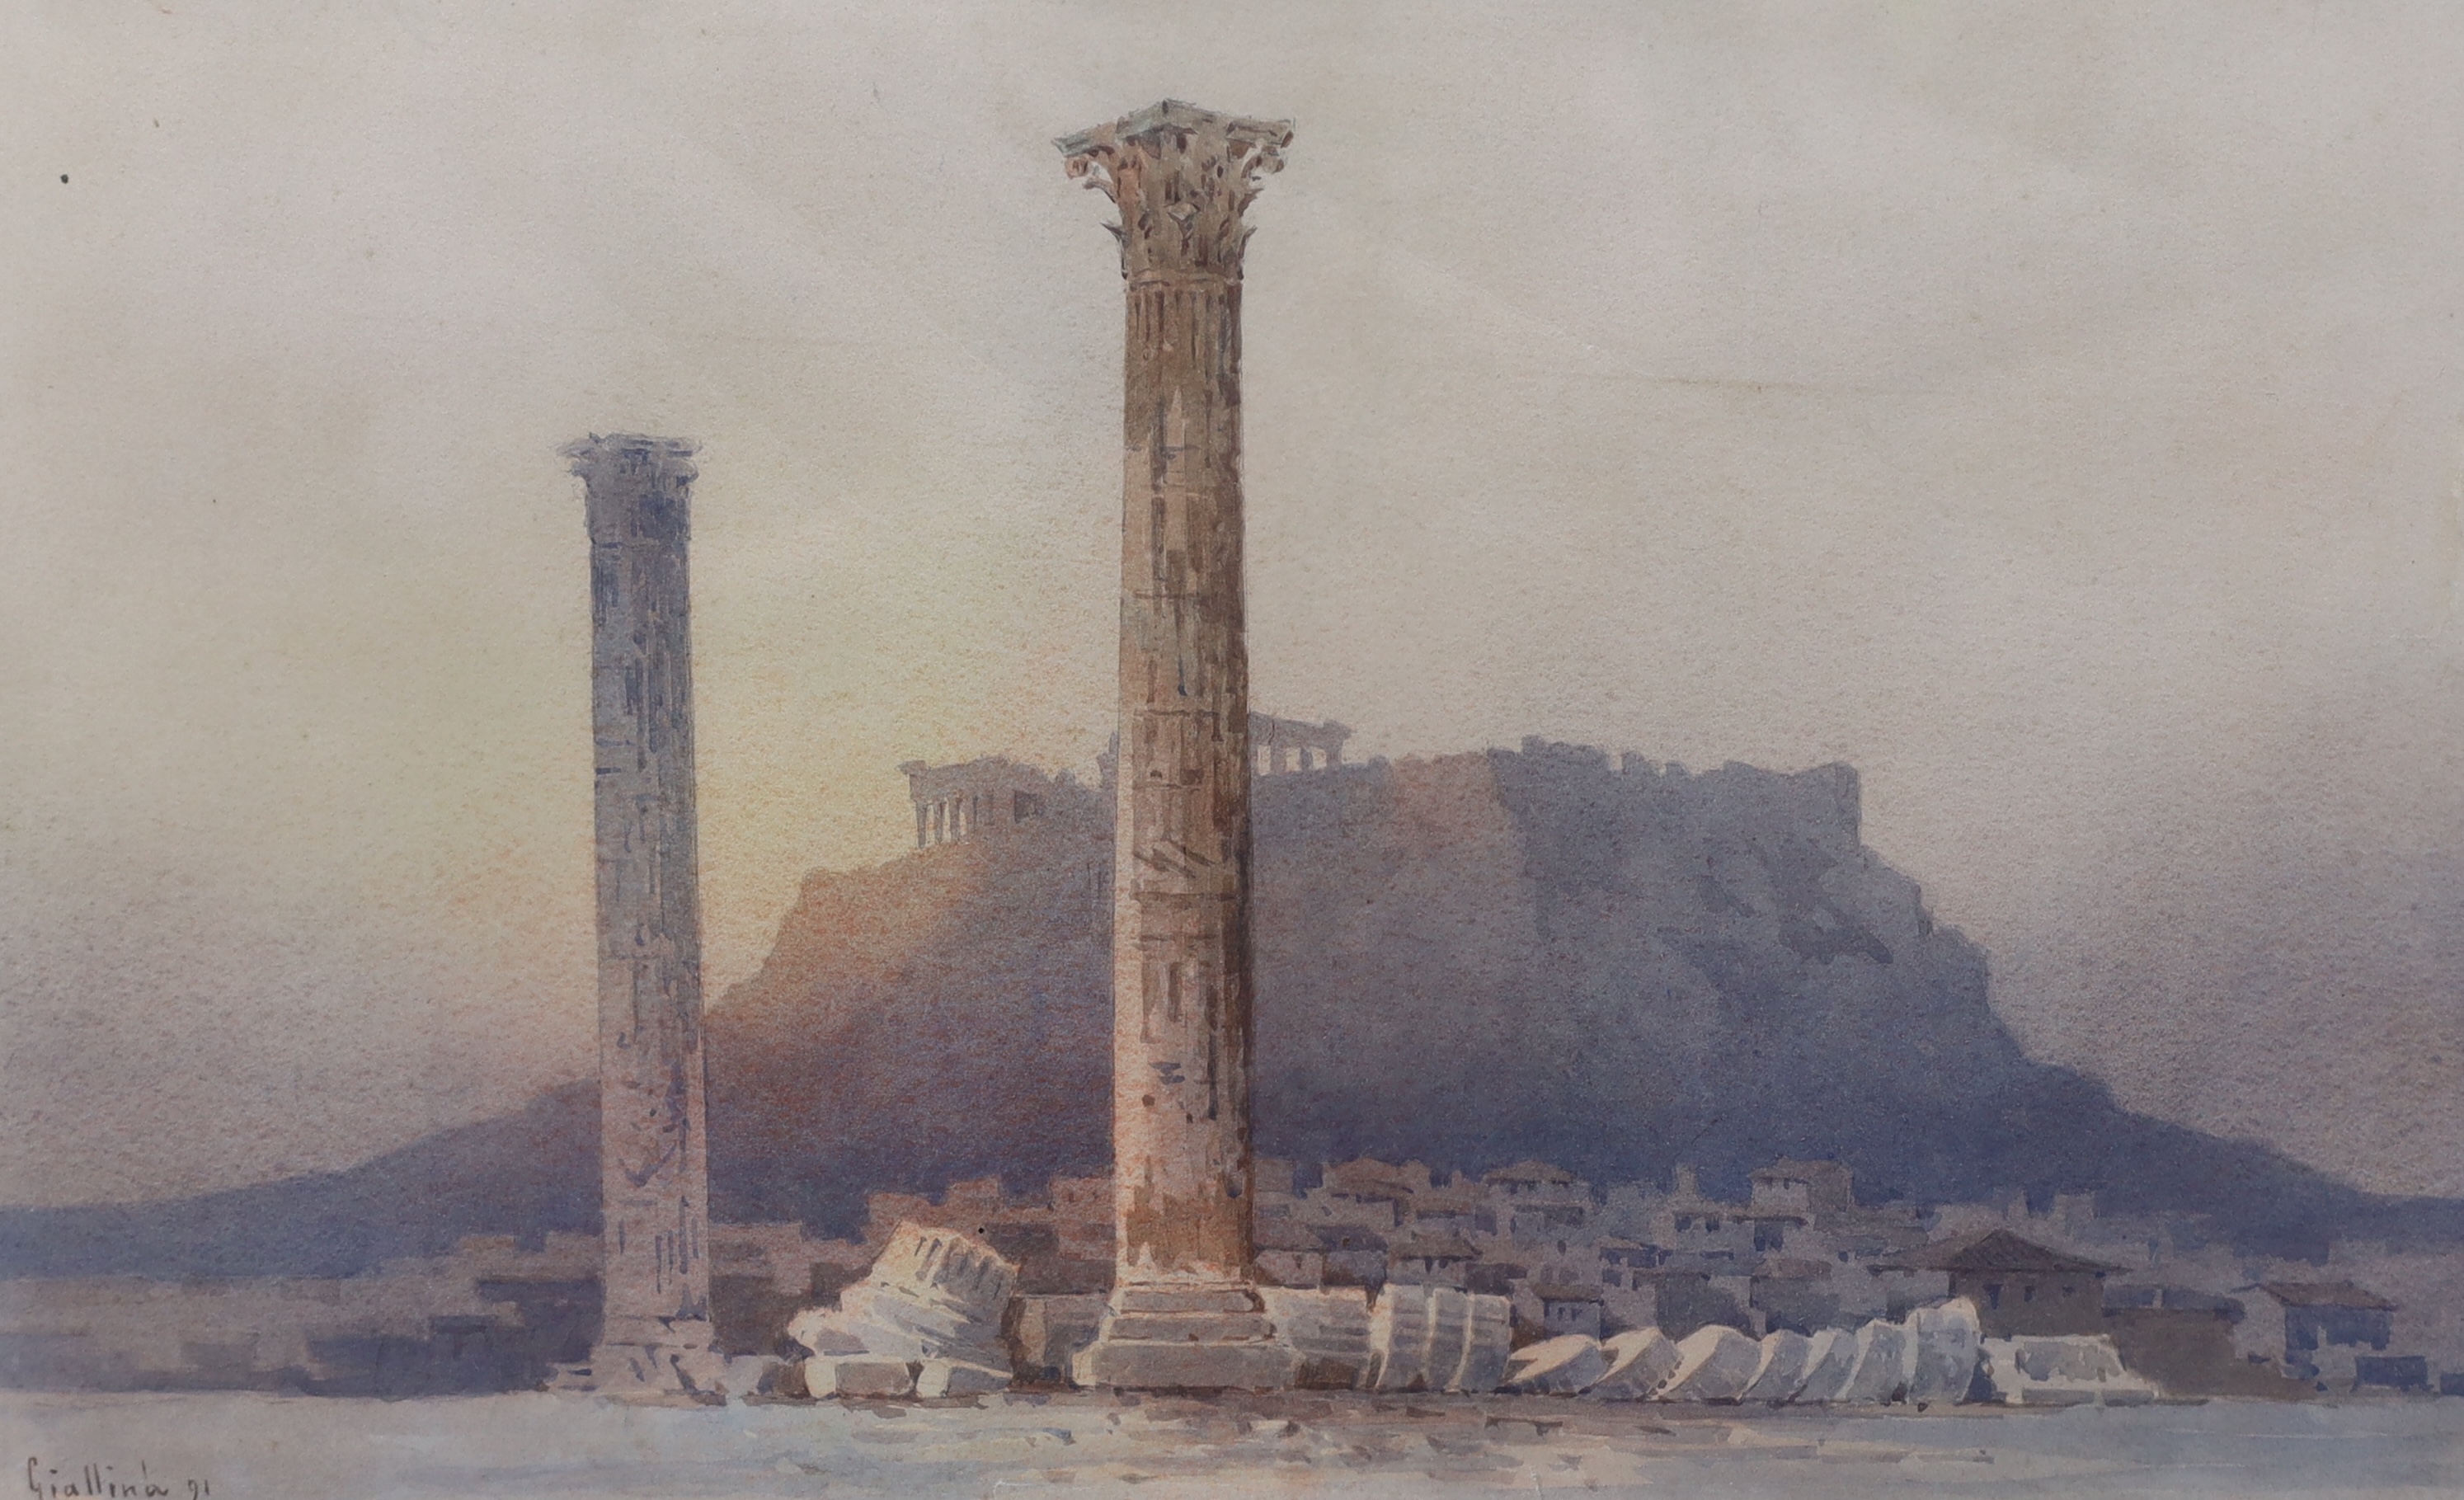 Angelos Giallina (Greek, 1857-1939), The Acropolis at Athens, watercolour, 36.5 x 44cm